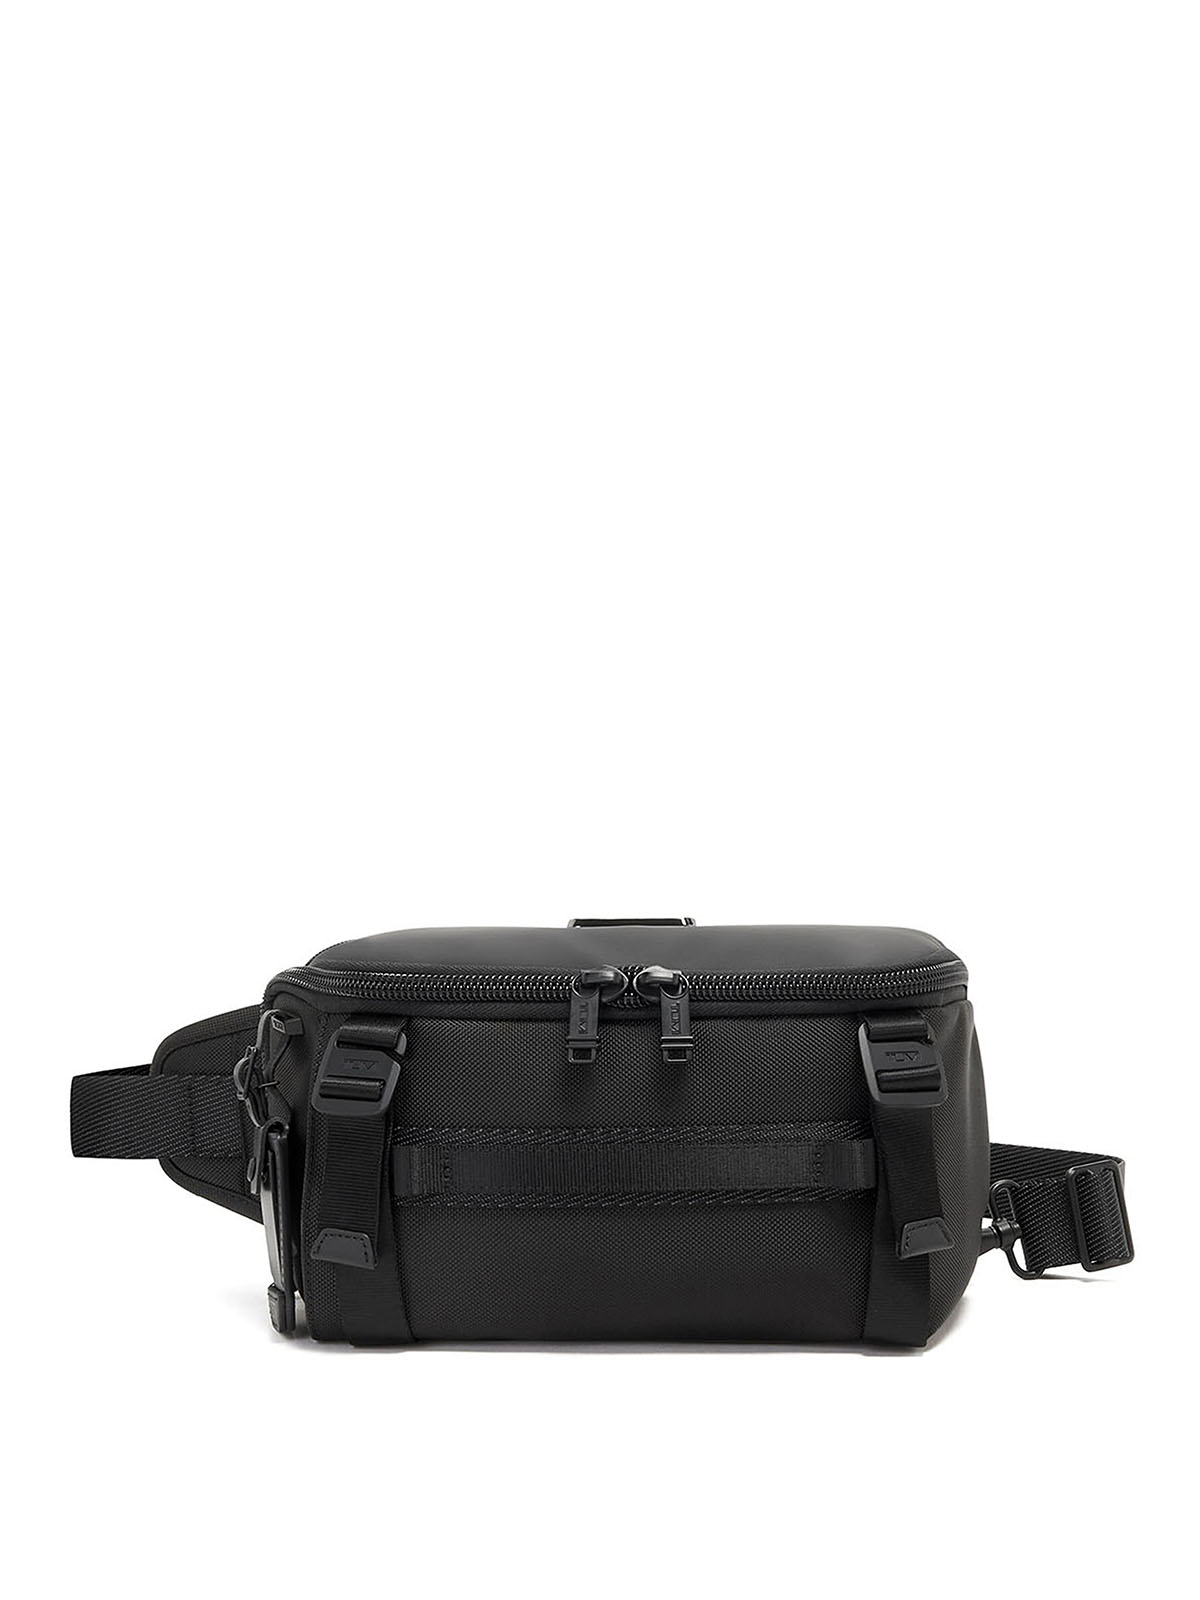 Belt bags Tumi - Conny 5952 - 1424821041 | Shop online at iKRIX